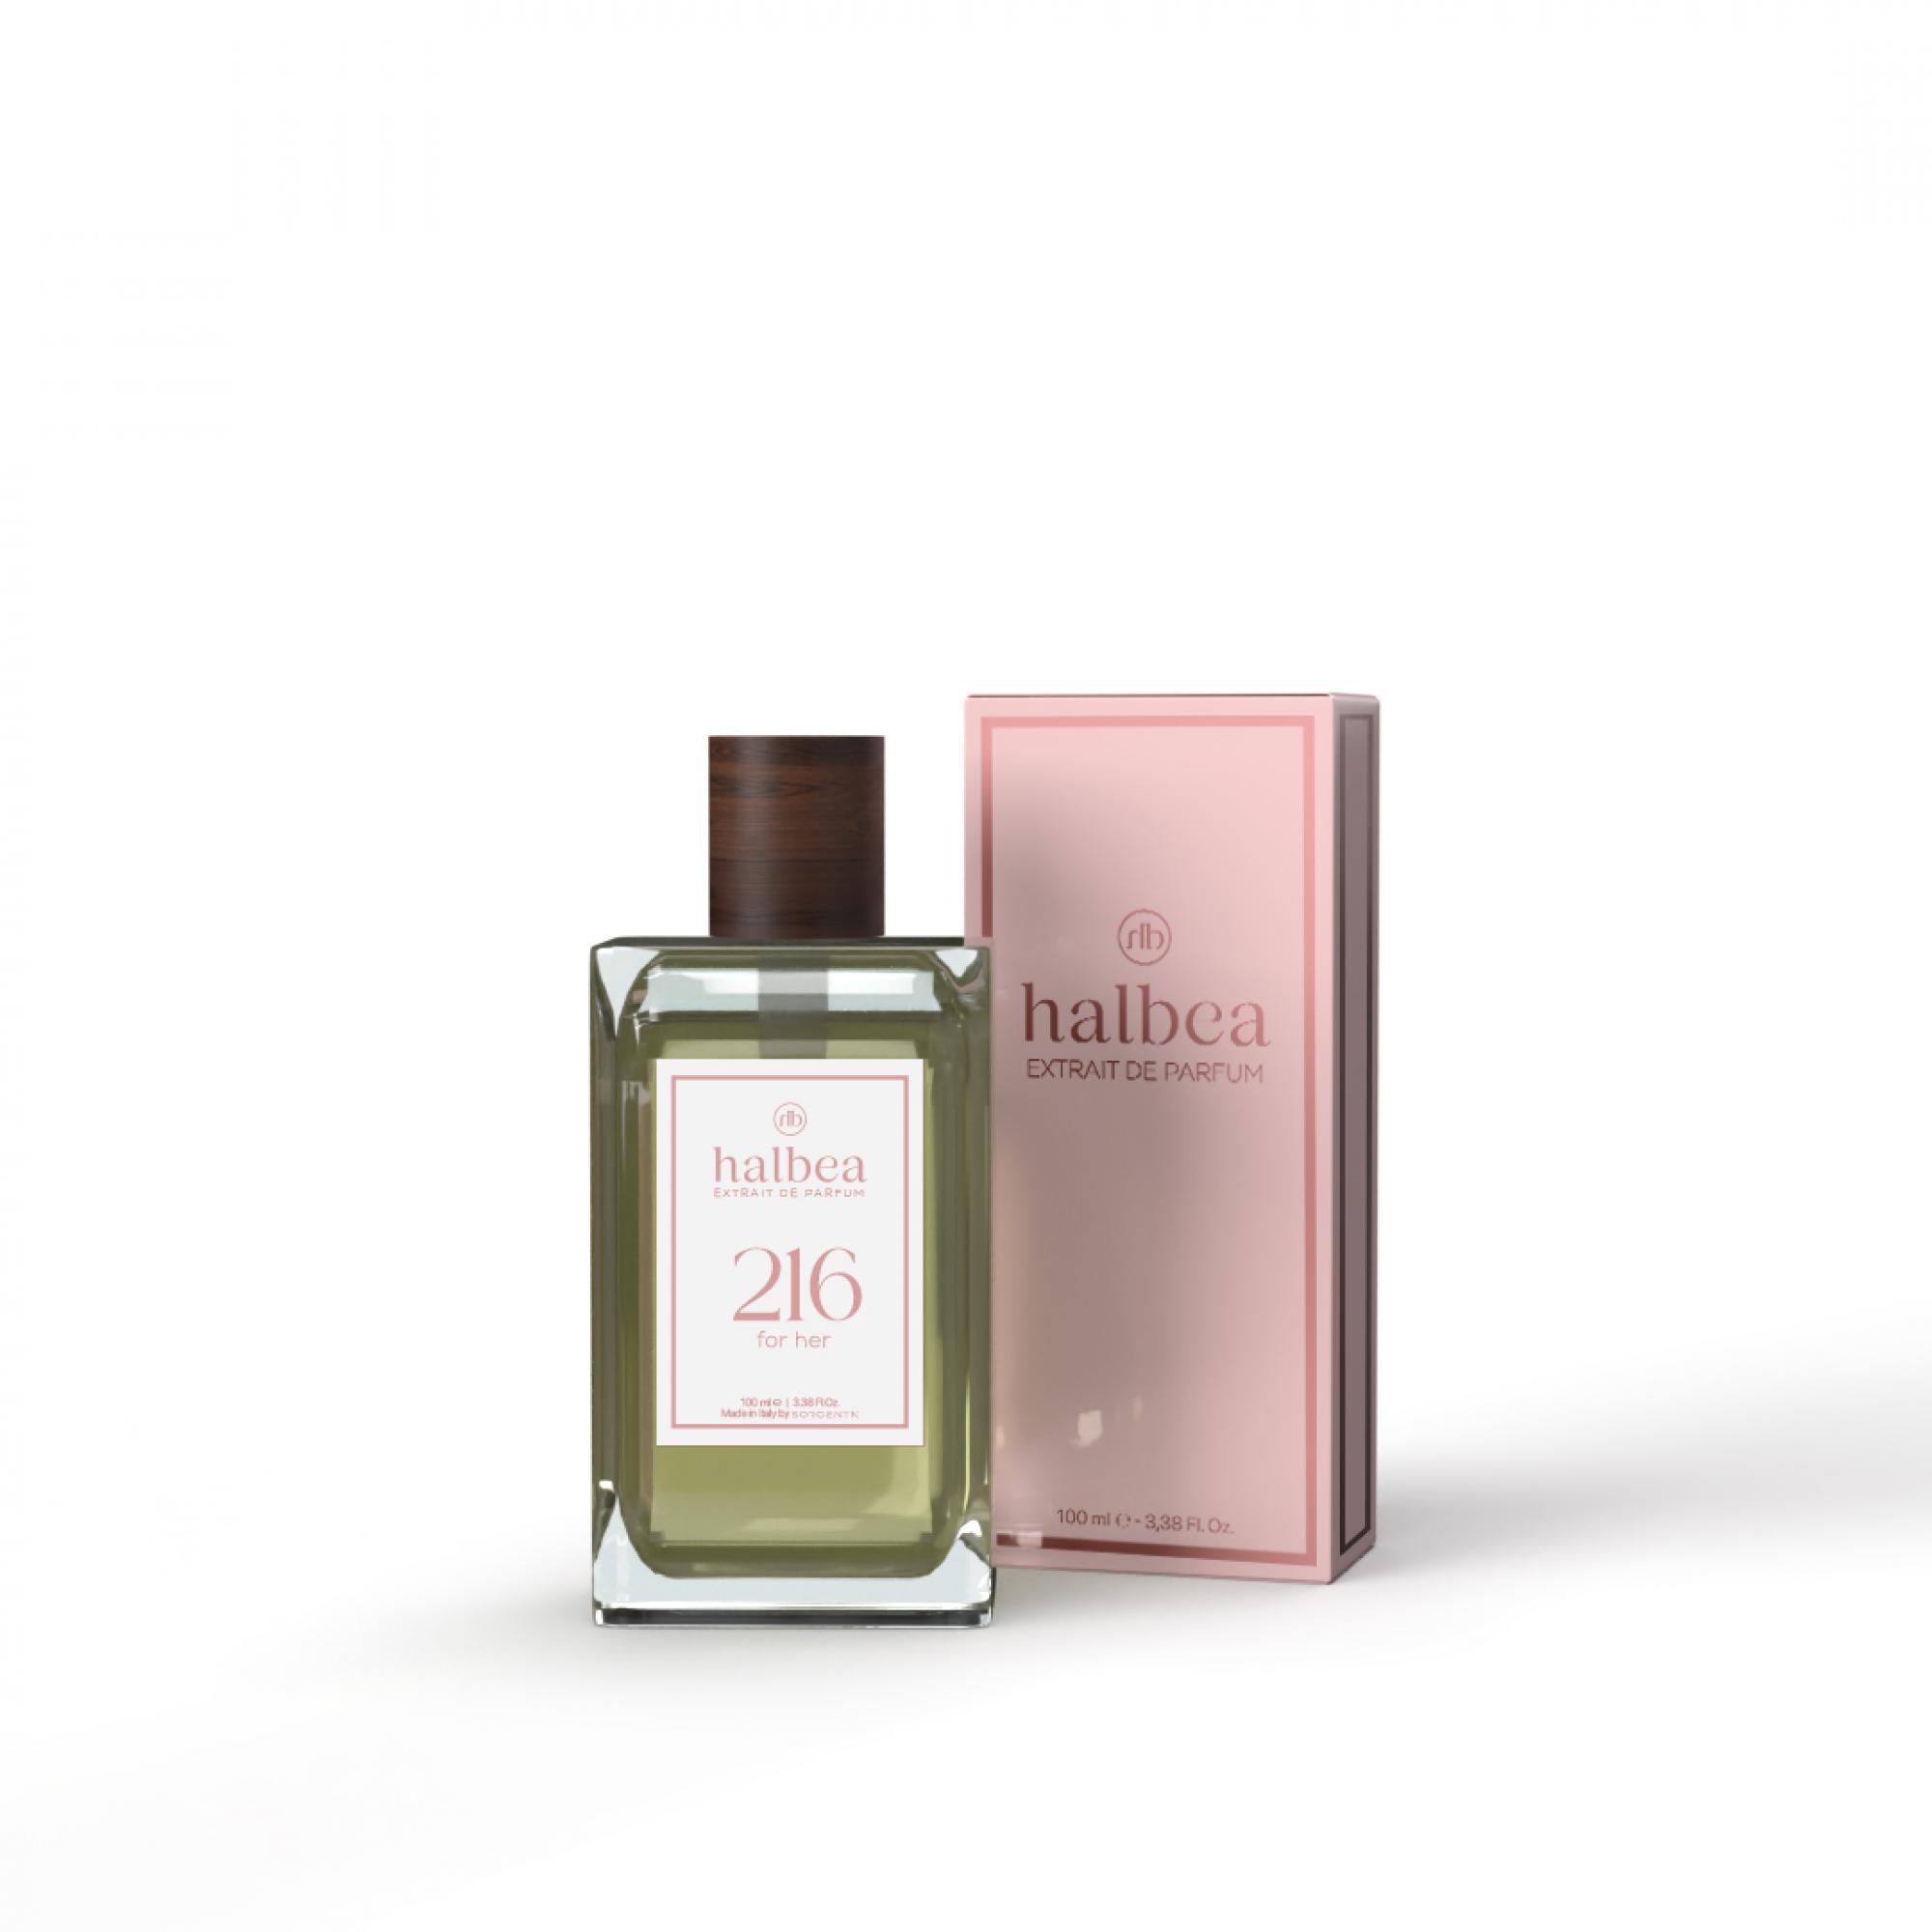 Halbea Parfum Nr. 216 insp. by Juicy Couture Viva la Juicy Sorgenta 100ml